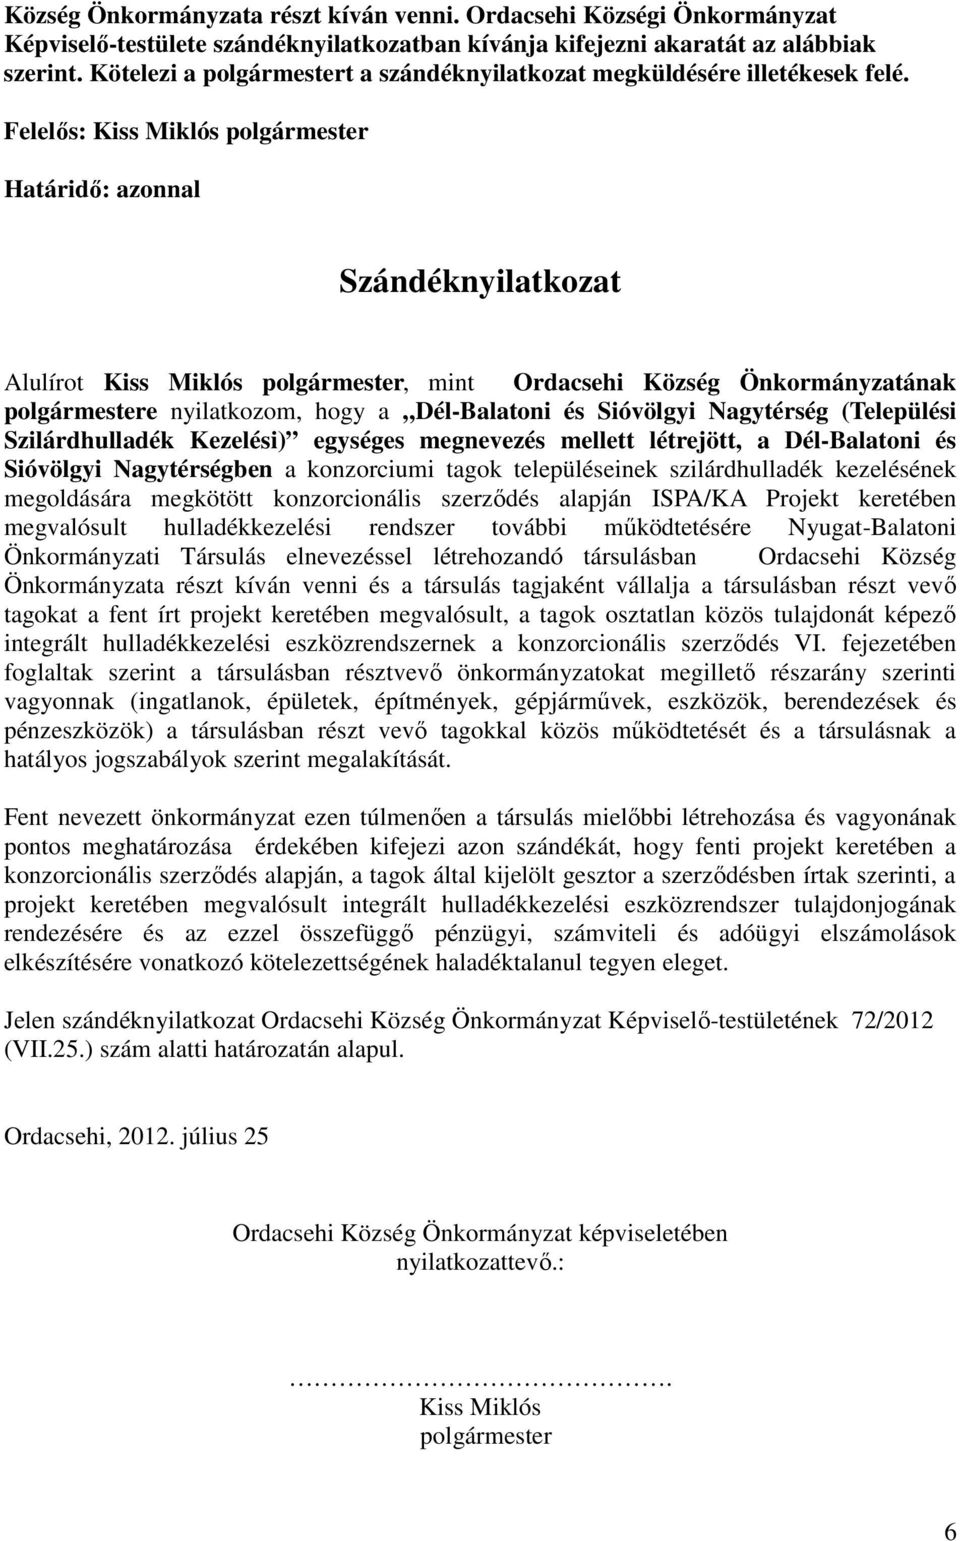 Felelıs: Kiss Miklós polgármester Határidı: azonnal Szándéknyilatkozat Alulírot Kiss Miklós polgármester, mint Ordacsehi Község Önkormányzatának polgármestere nyilatkozom, hogy a Dél-Balatoni és